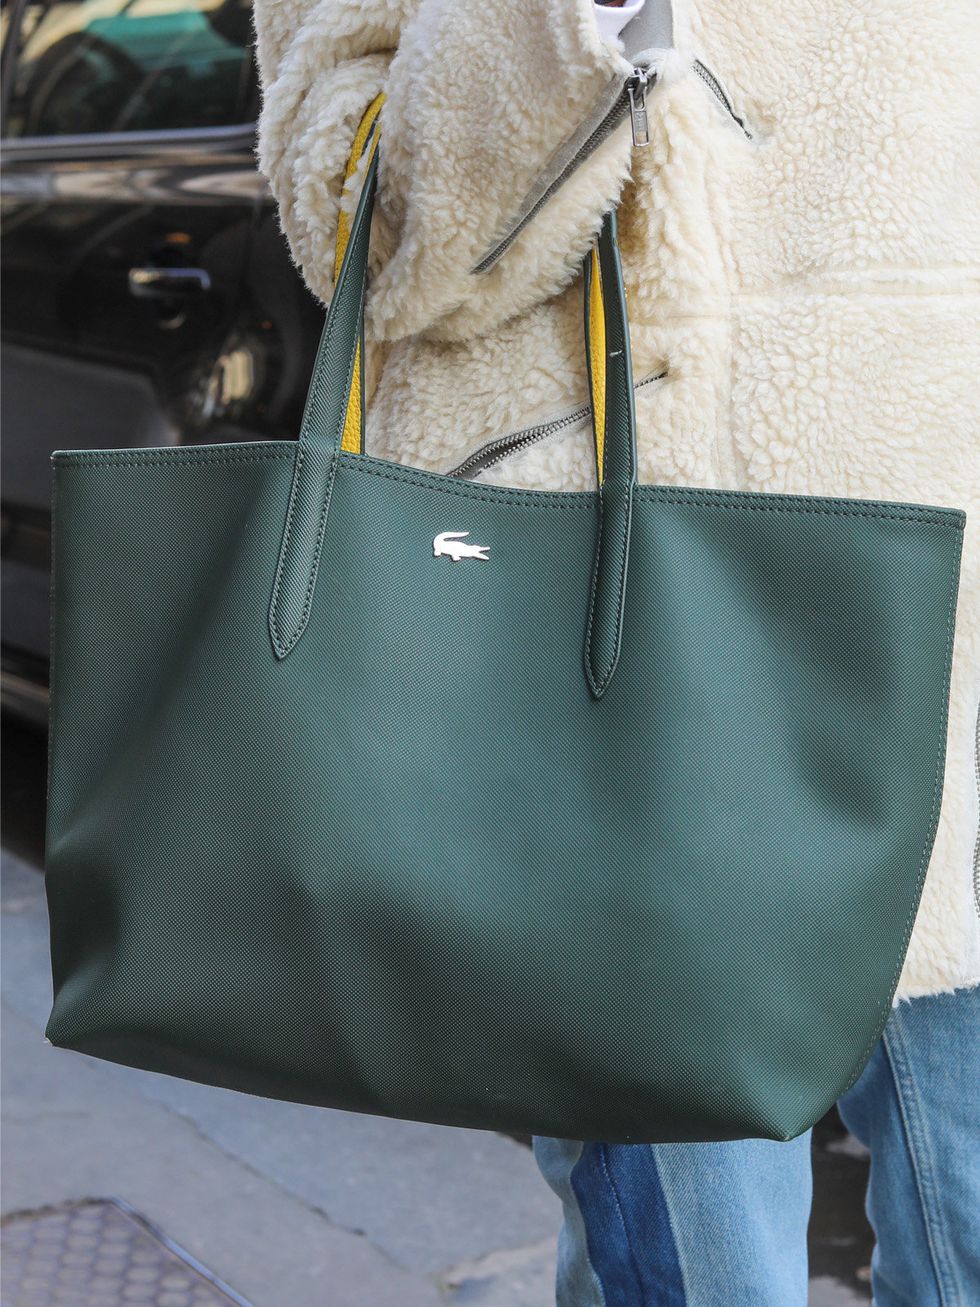 Bag, Handbag, White, Green, Tote bag, Fashion accessory, Shoulder bag, Hobo bag, Beige, Leather, 